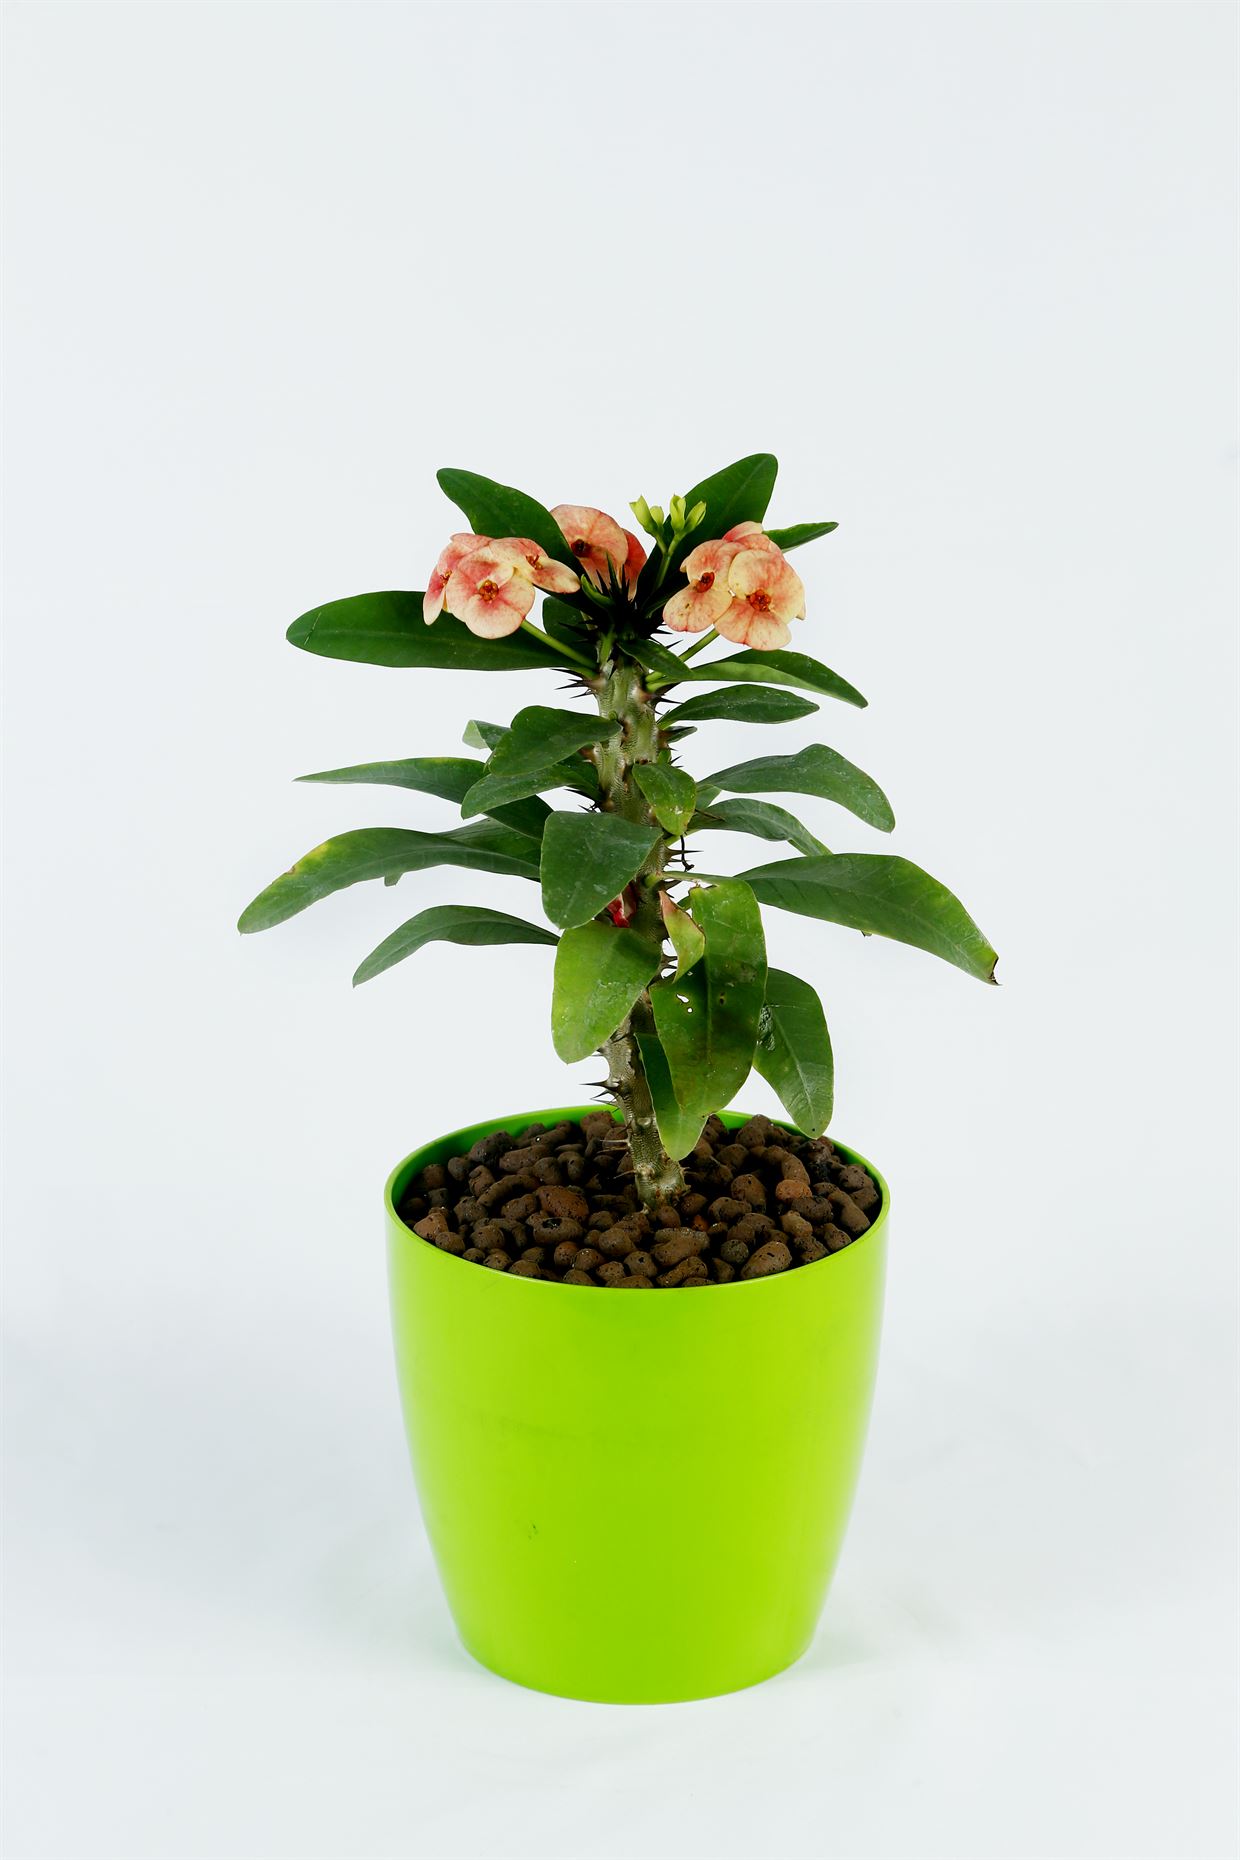 Euphorbia_1